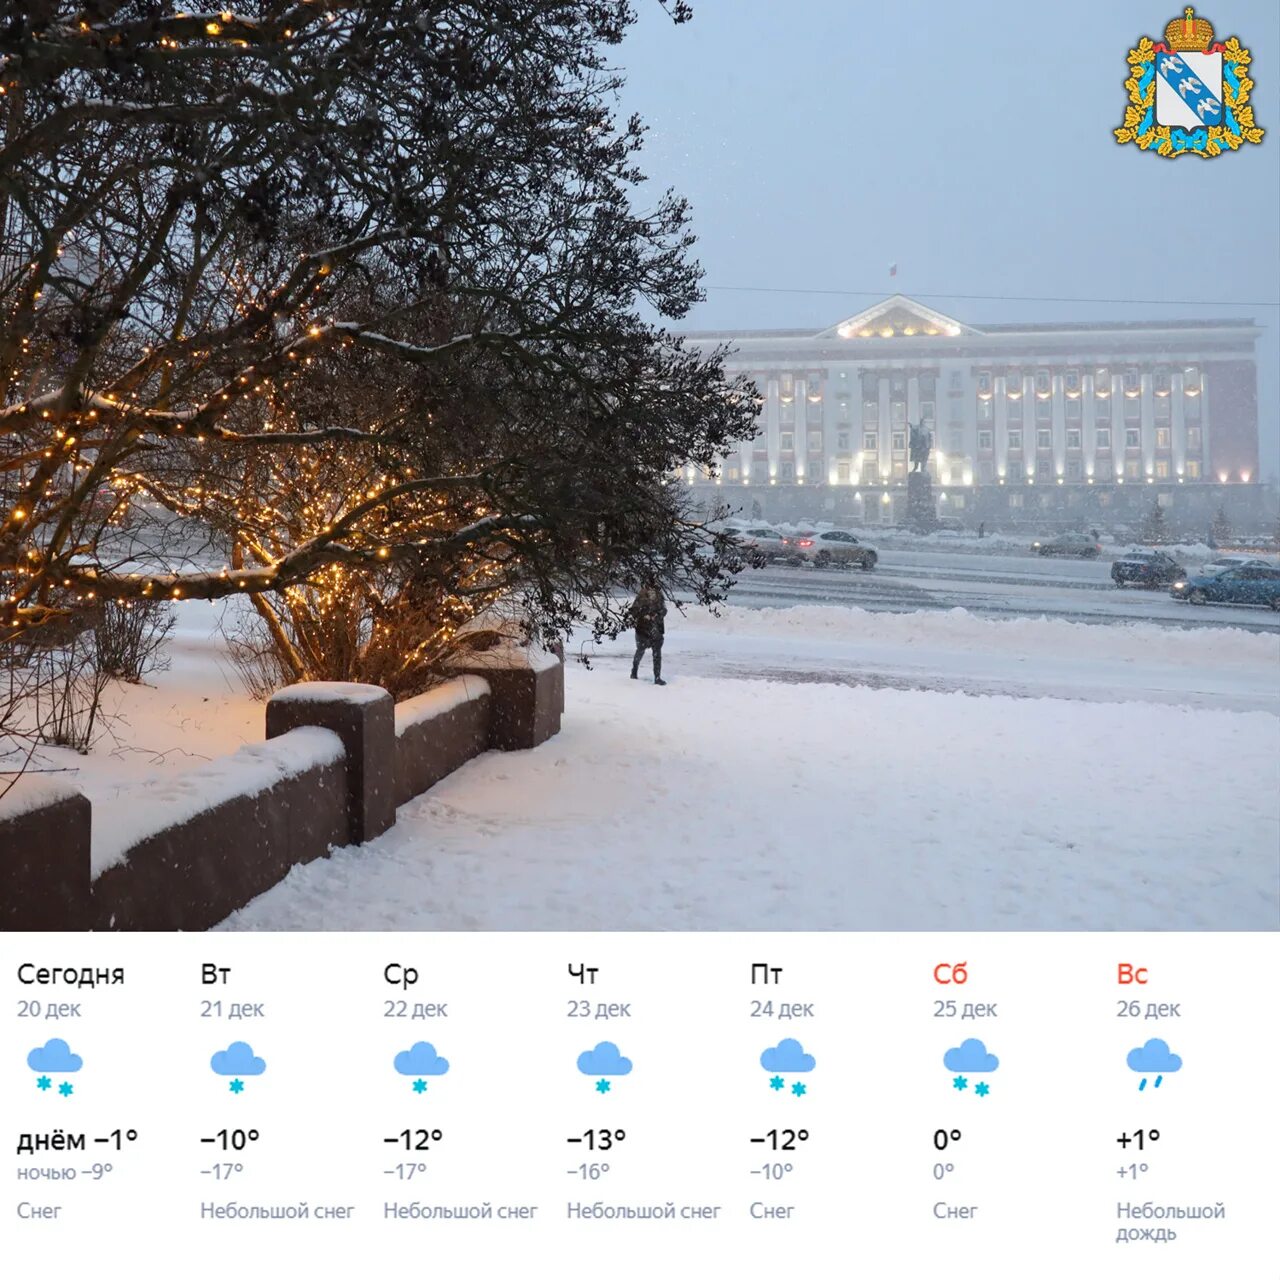 Снегопад в Курске в марте 2013. Снегопад в Курске в марте 2013 года. Белгород погода зимой. Курск погода фото сейчас. Погода в курске ставропольский край